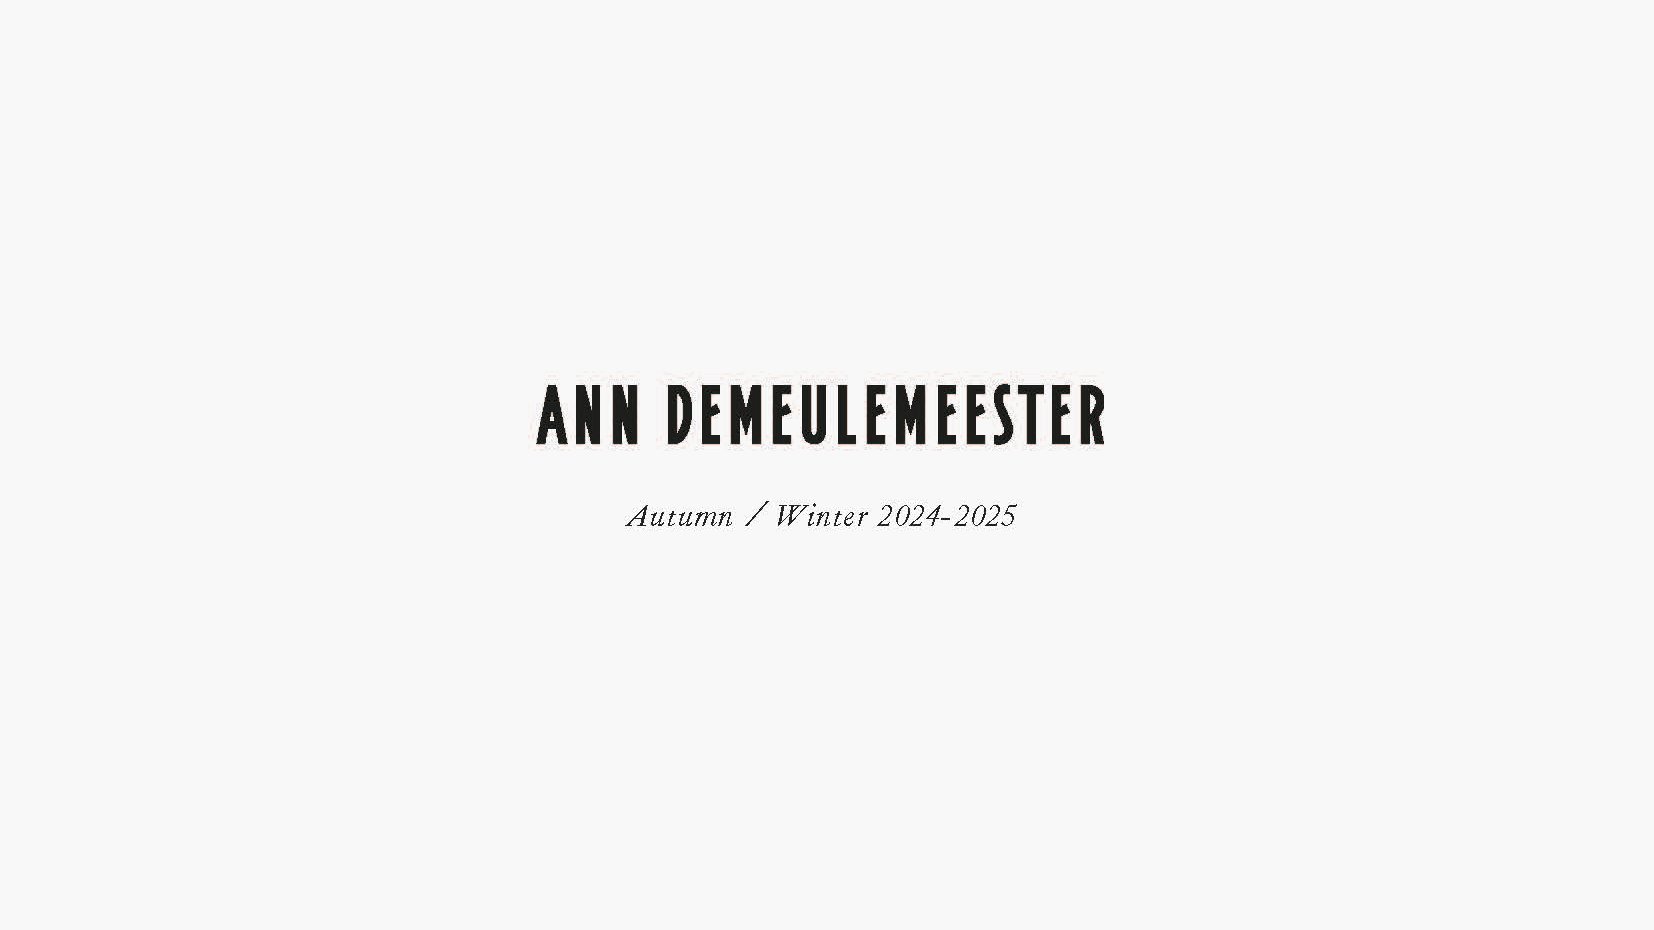 Ann Demeulemeester A/W 24